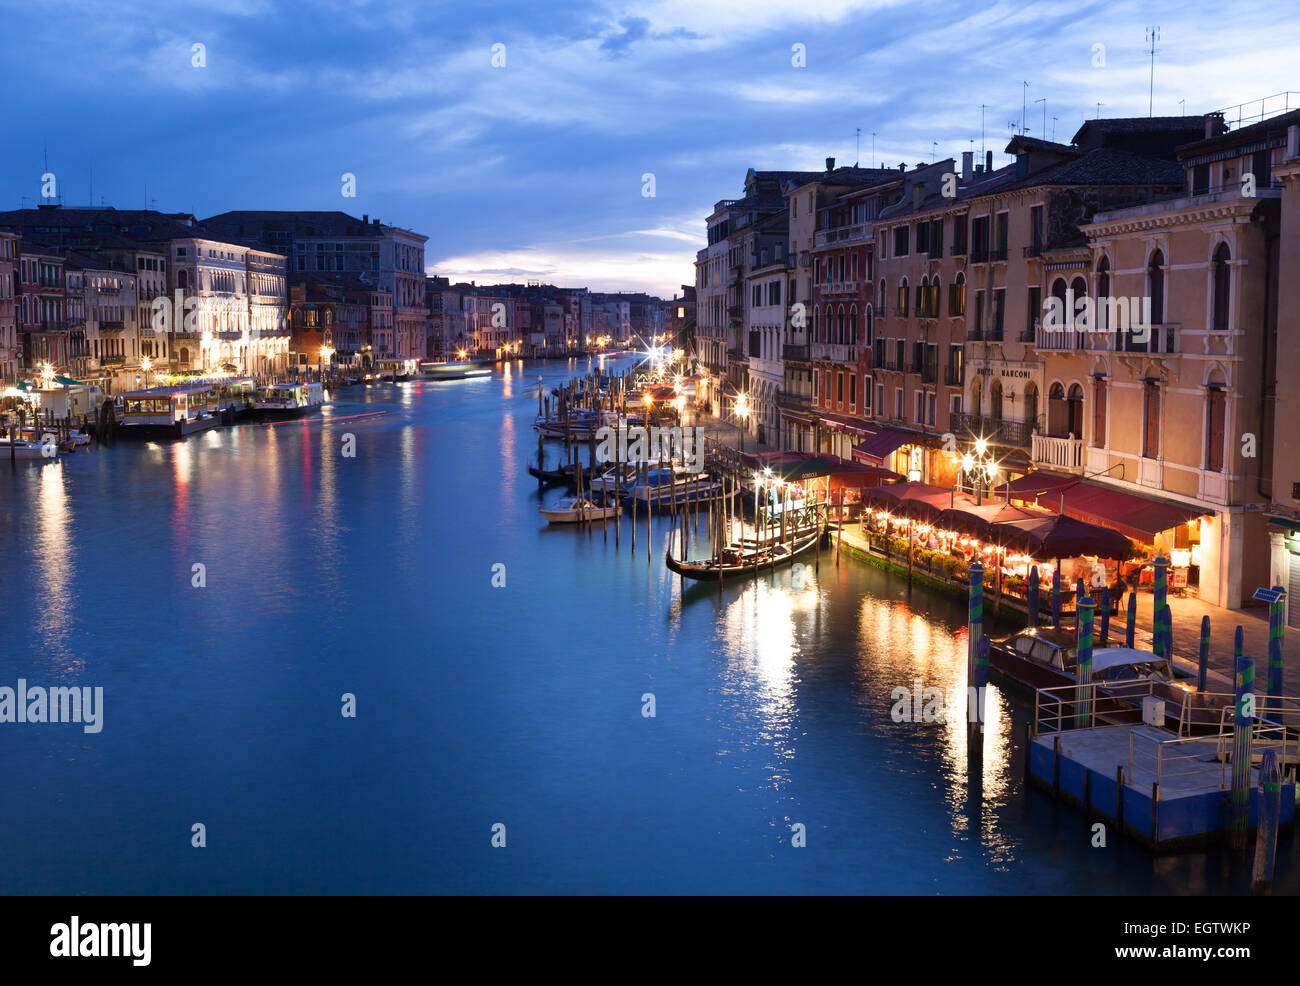 Vue de nuit sur Grand Canal du pont du Rialto à Venise en gondoles. Italie Banque D'Images